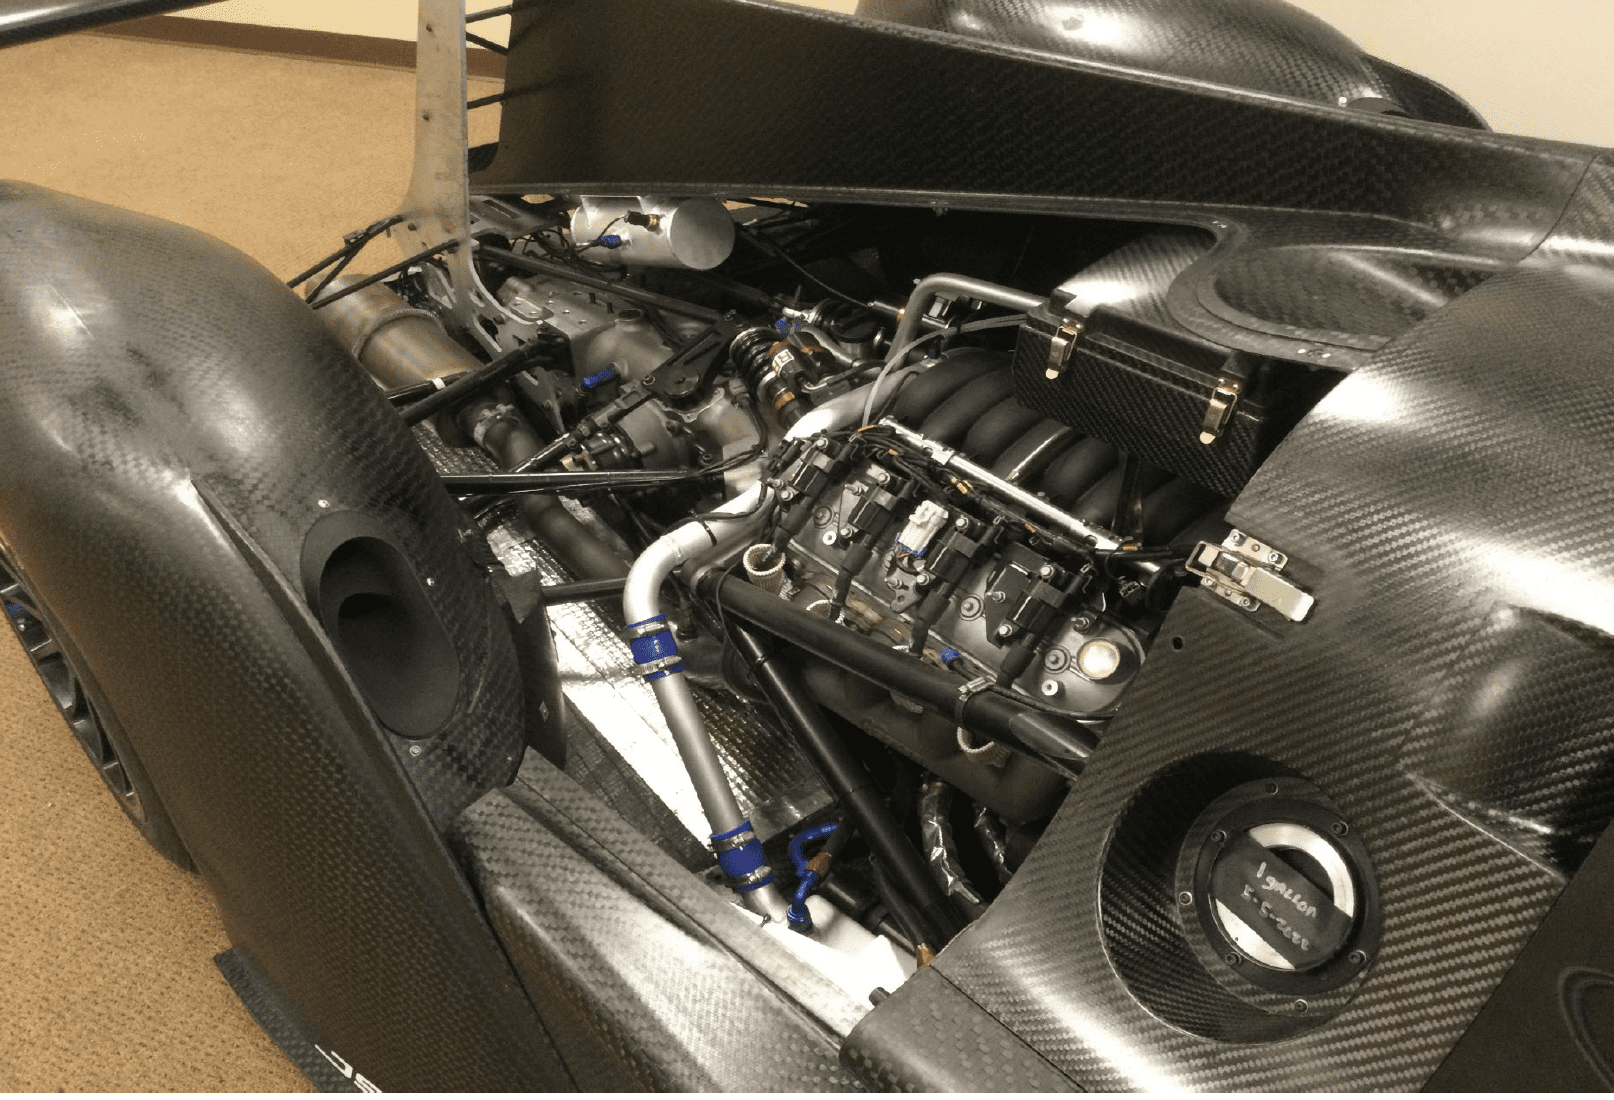 2019 Porsche GT3 - Ligier LMP4-V8 - Used - VIN 1g1y52d90k5800224 - 850 Miles - 8 cyl - 2WD - Automatic - Coupe - Black - Sebring, FL 33100, United States